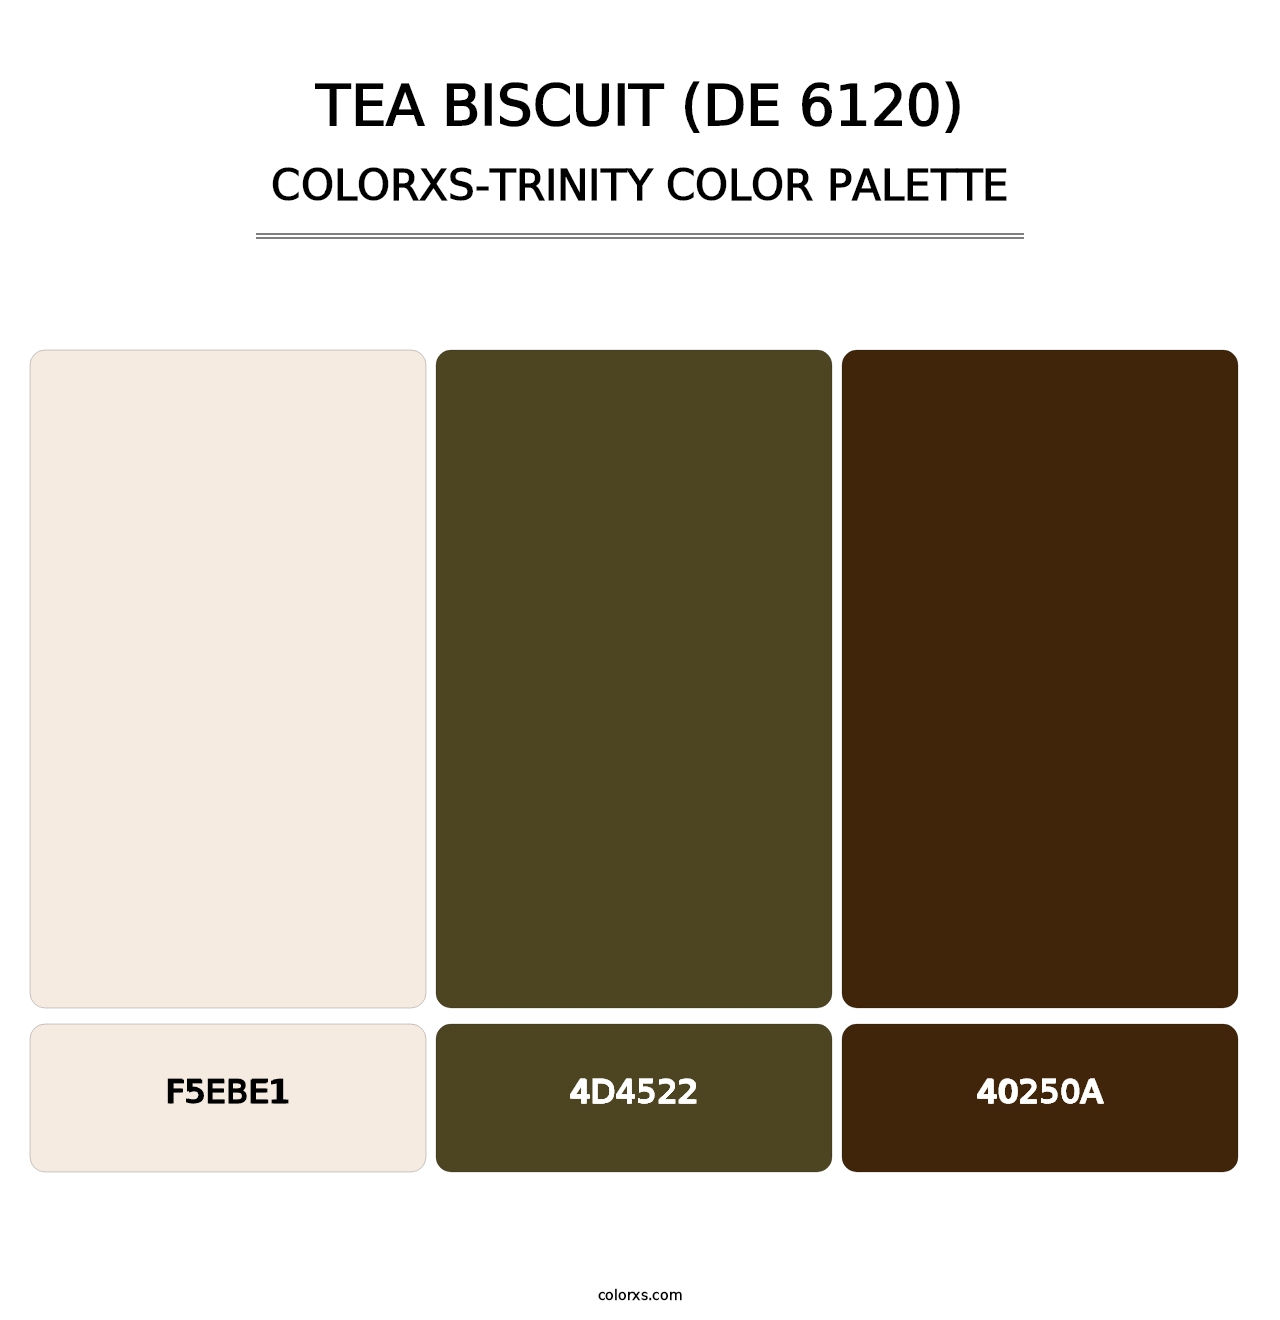 Tea Biscuit (DE 6120) - Colorxs Trinity Palette